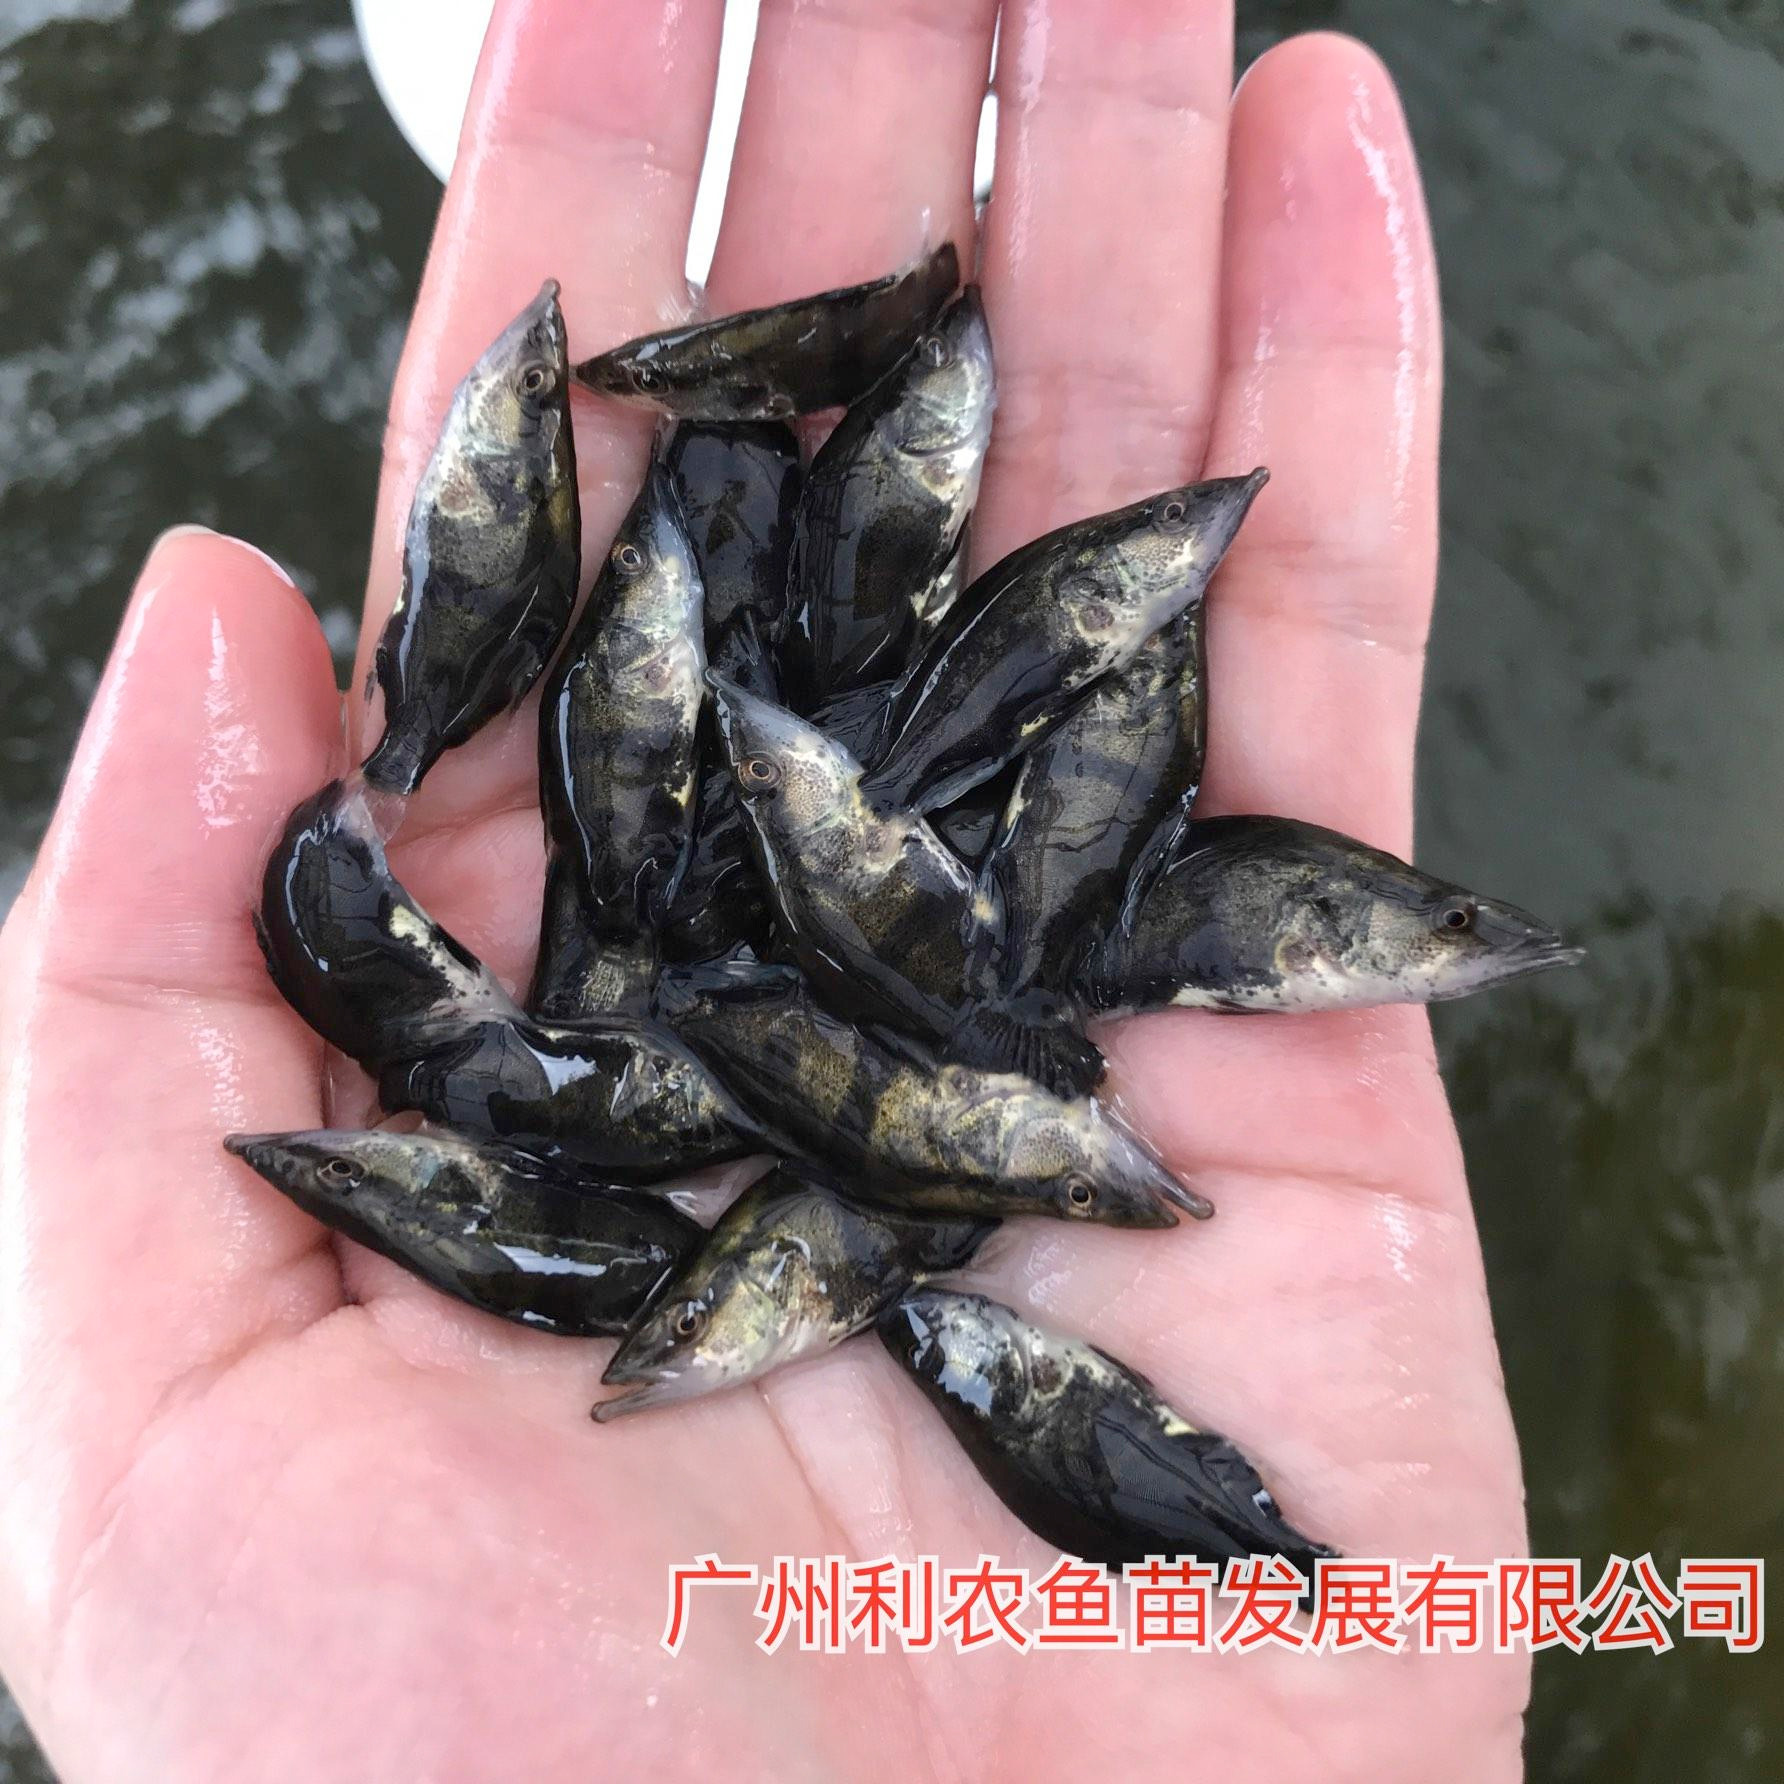 大量出售 广东茂名桂花鱼苗批发价格 4-5cm少病害好养殖鳜鱼苗